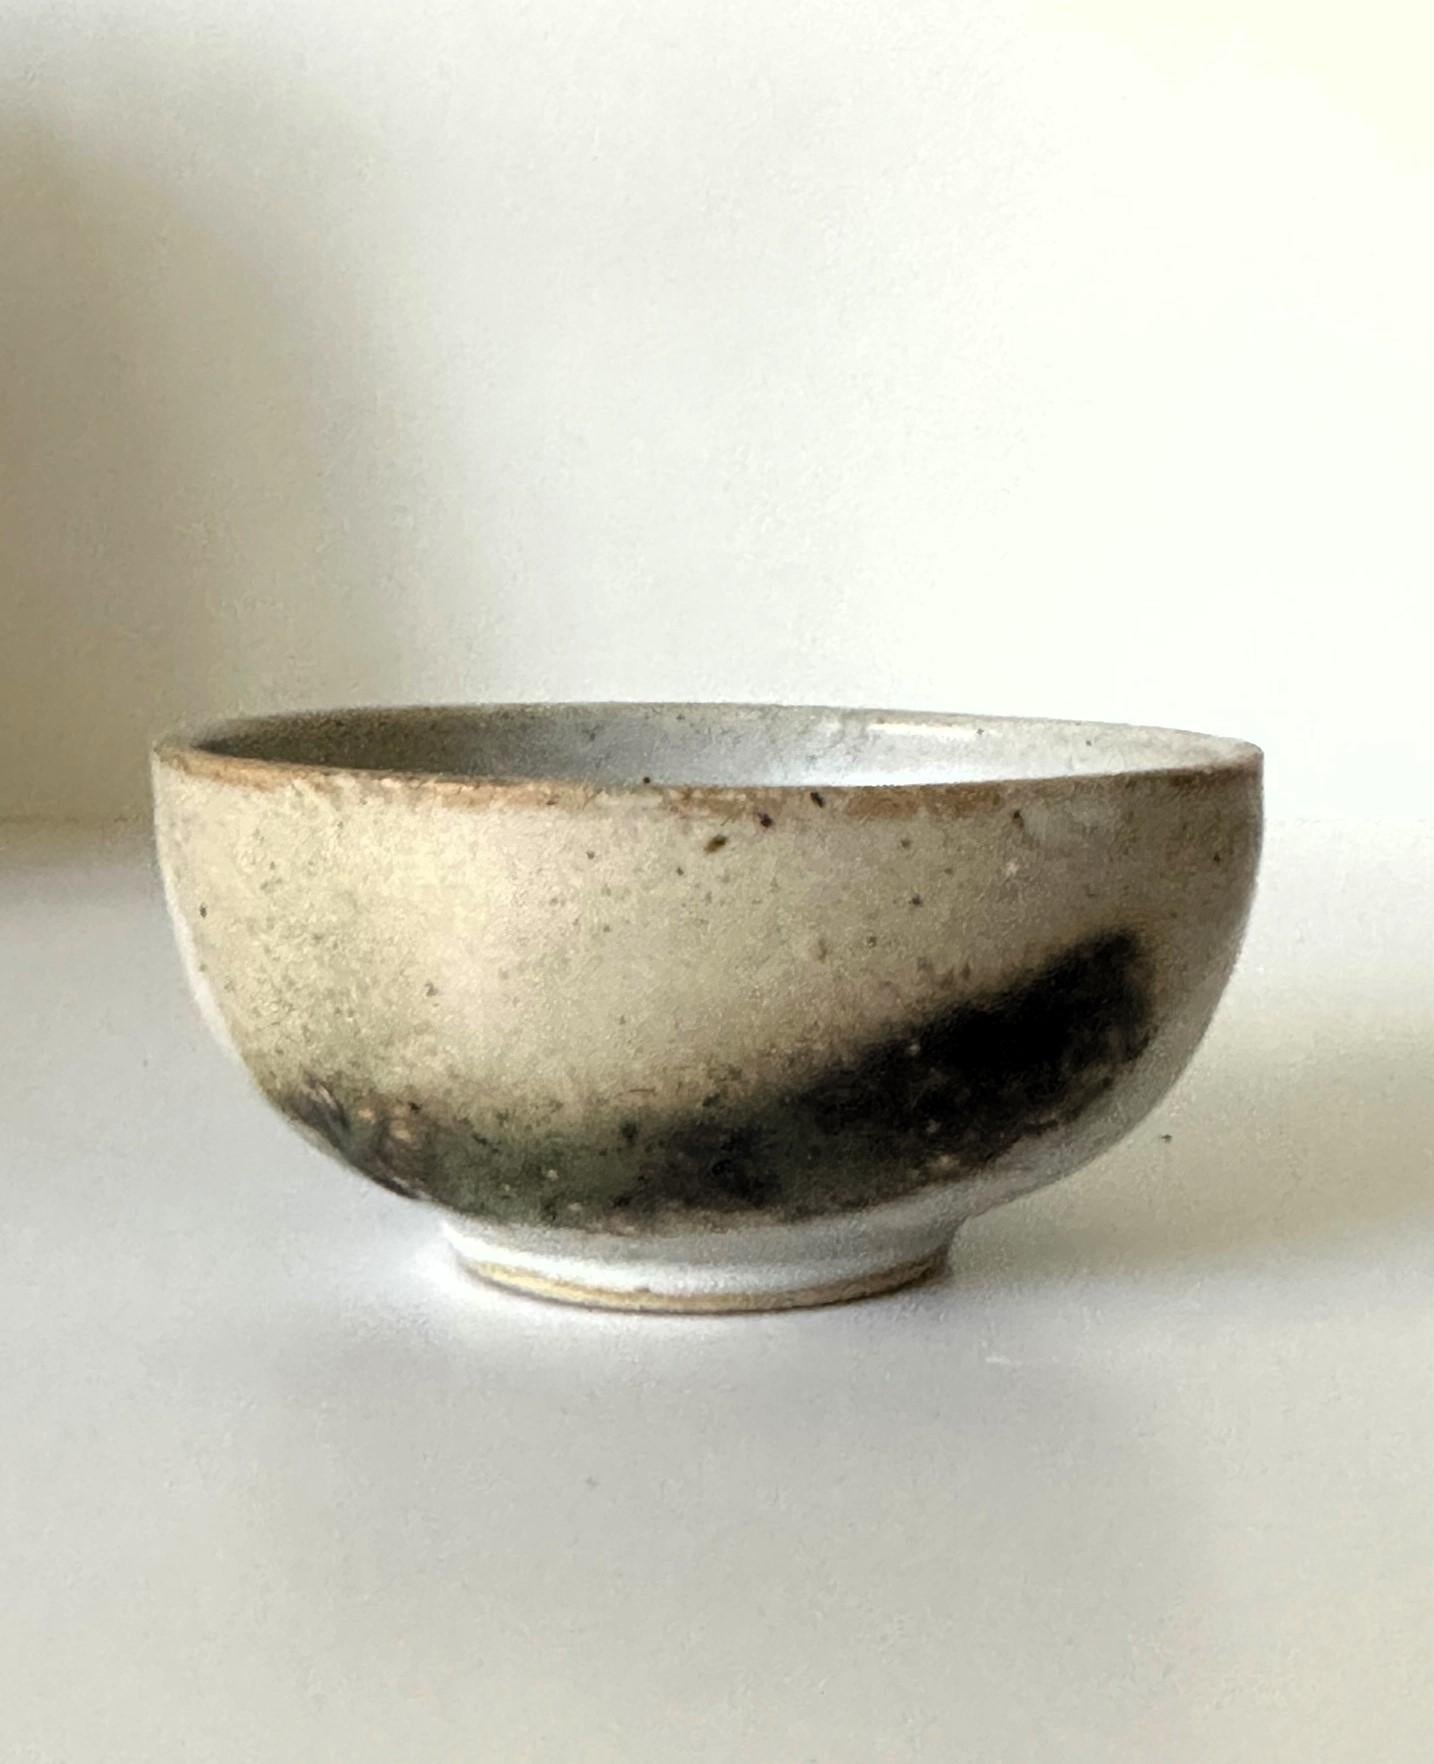 Eine kleine, elegante Teeschale aus glasierter Keramik (Chawan) der japanisch-amerikanischen Künstlerin Toshiko Takaezu (Amerikanerin, 1922 - 2011). Die ausgewogene Form ist handgefertigt und weist nur eine leichte Unregelmäßigkeit auf. Die